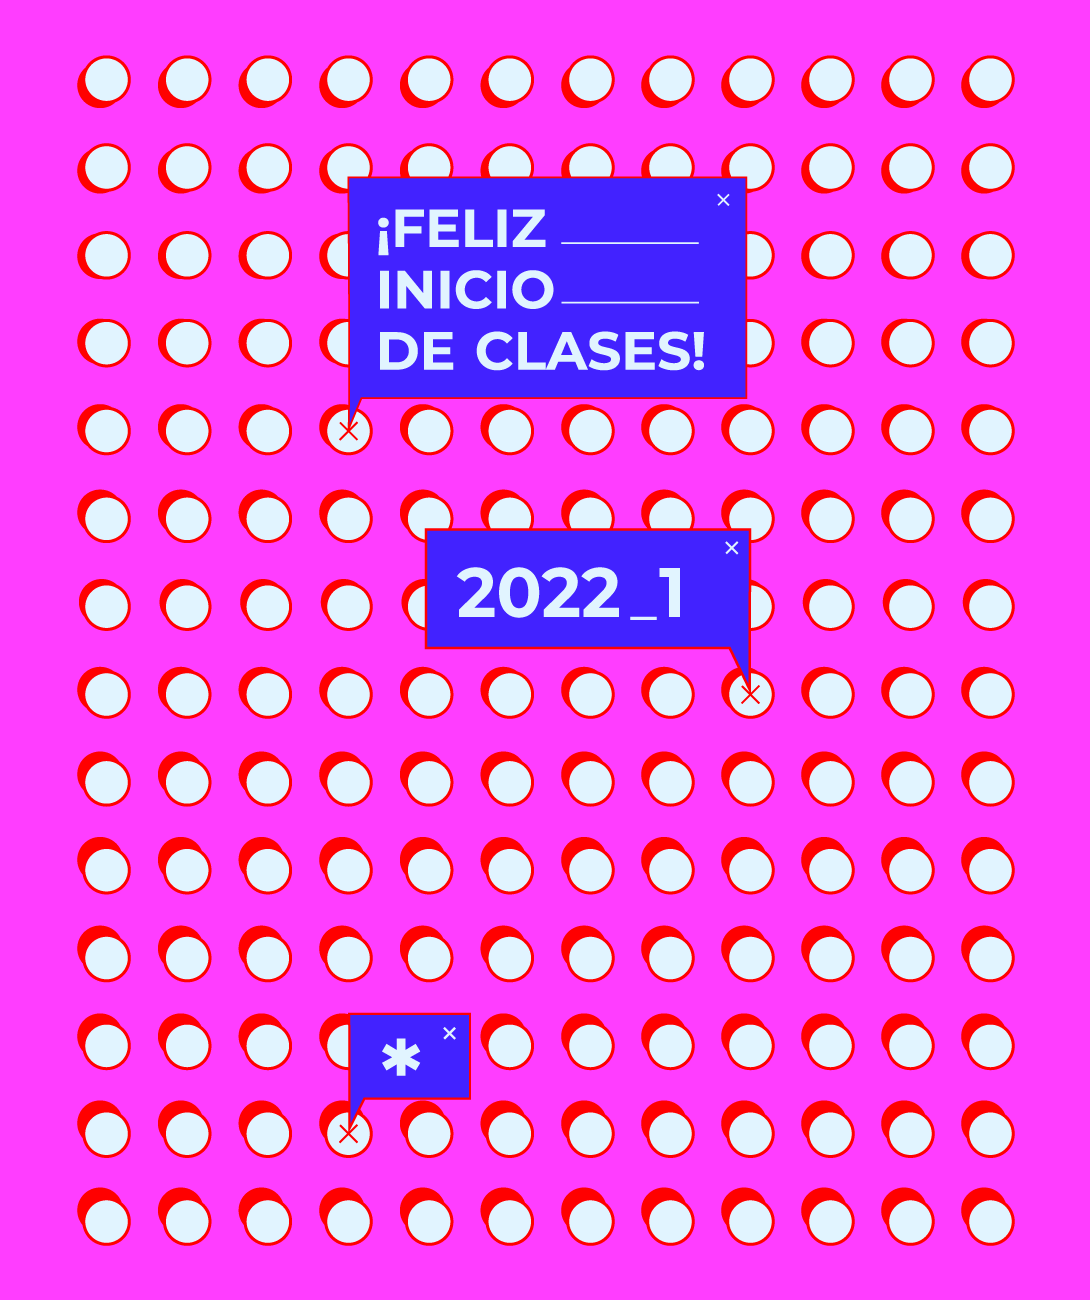 ¡Feliz inicio del clase 2022-1!